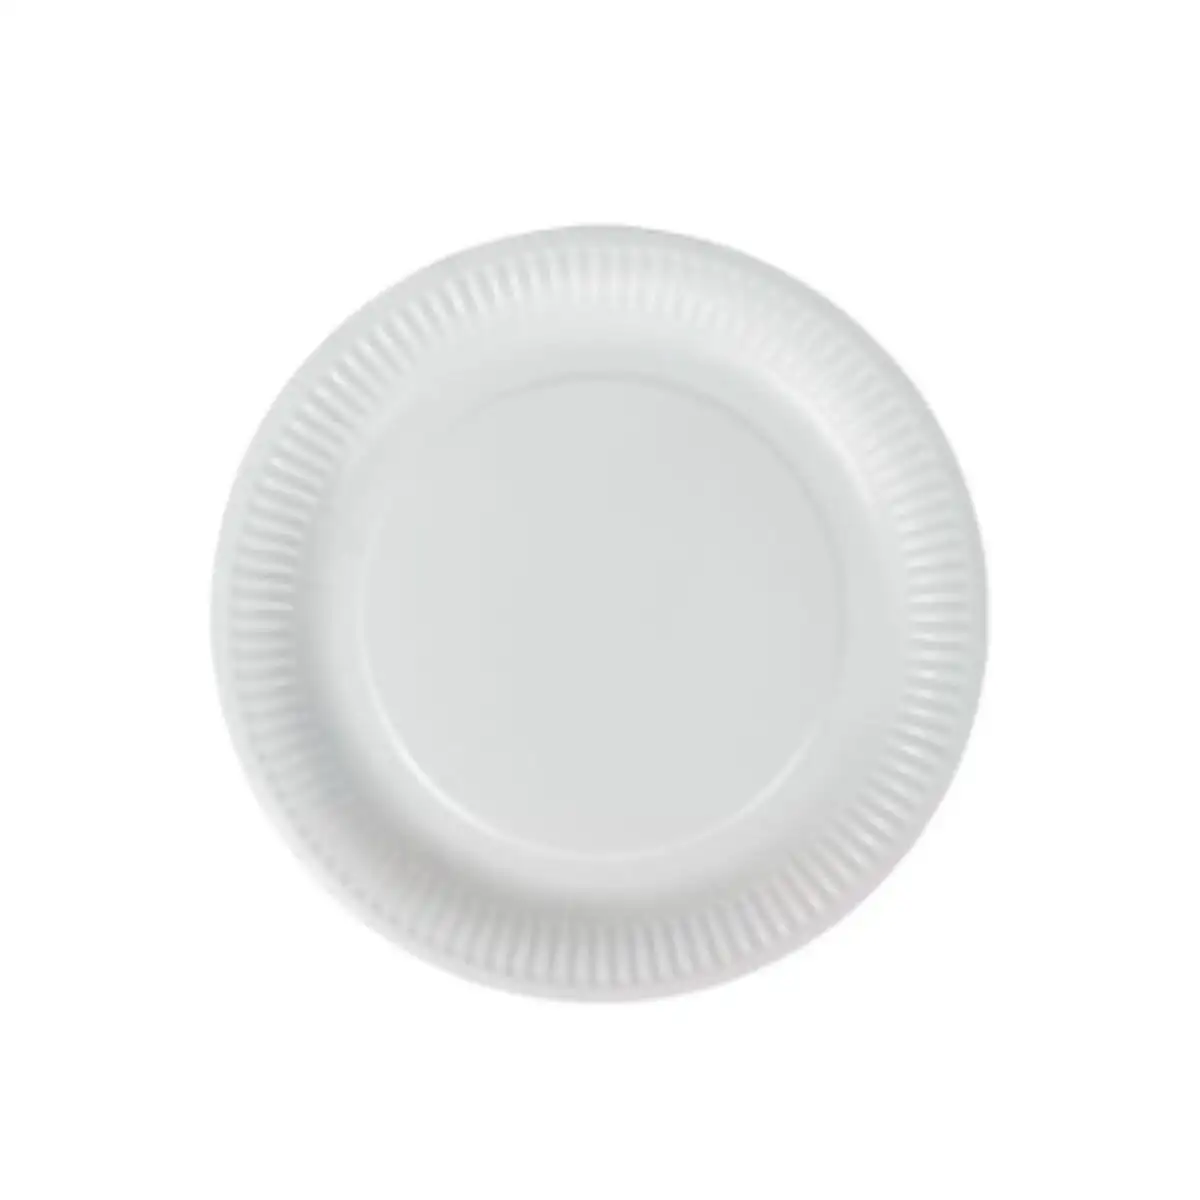 Service de vaisselle algon rond blanc carton produits a usage unique 18 cm 100 unites_7633. DIAYTAR SENEGAL - Où Chaque Produit est une Promesse de Qualité. Explorez notre boutique en ligne et choisissez des produits qui répondent à vos exigences élevées.